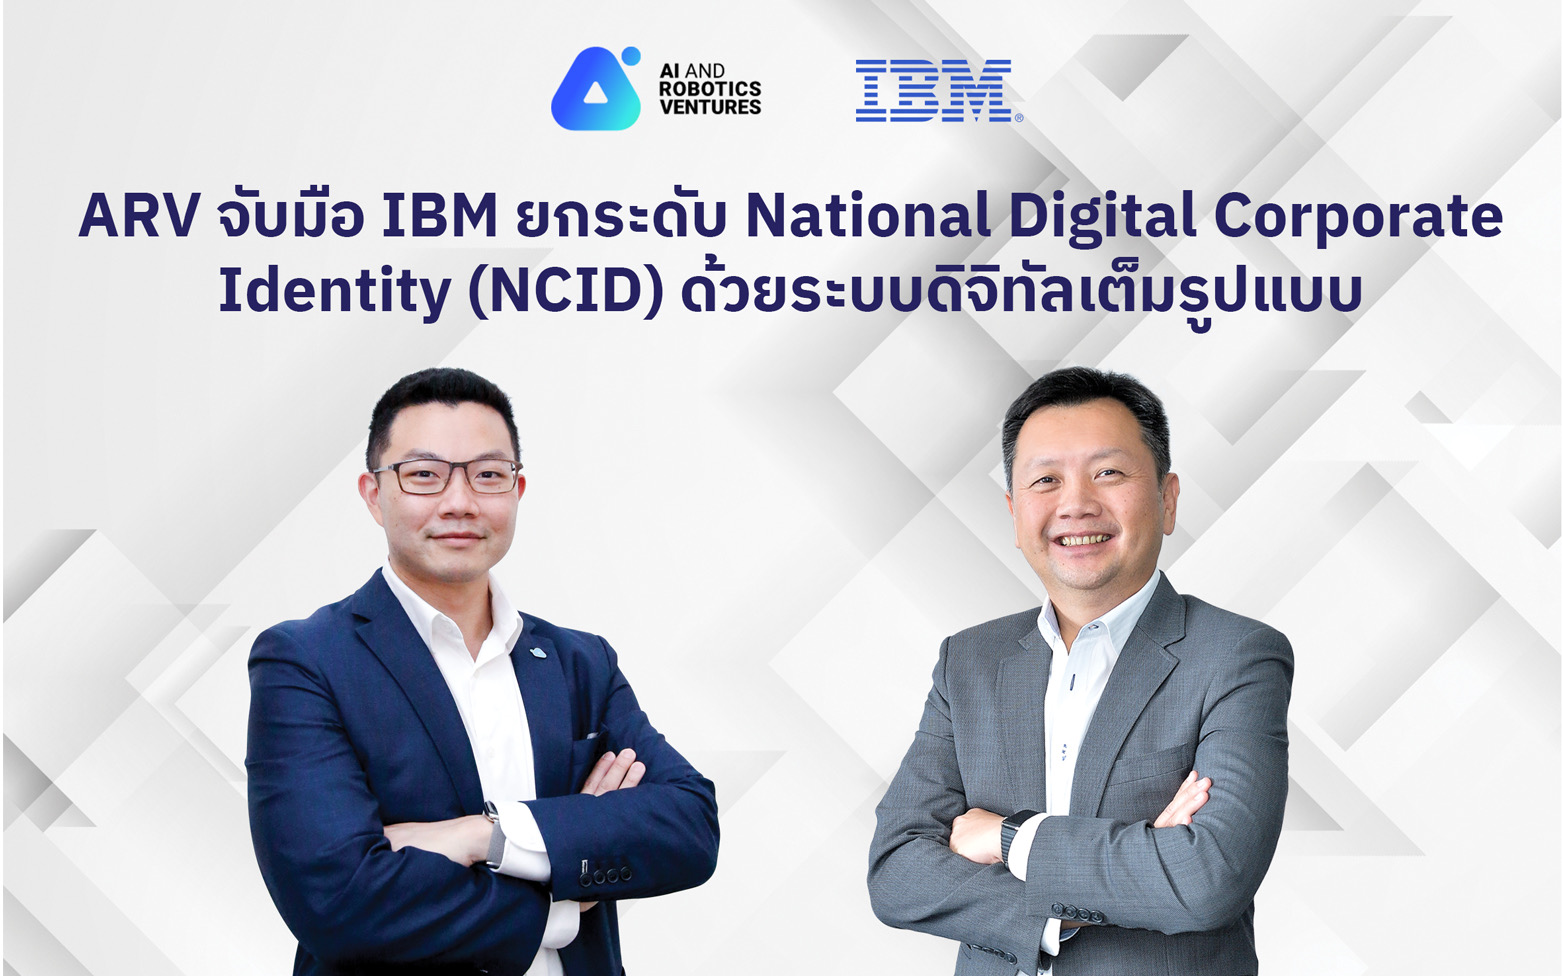 ครั้งแรกในอาเซียน เออาร์วี จับมือ ไอบีเอ็ม ยกระดับการยืนยันตัวตนองค์กรด้วยระบบดิจิทัล เปิดตัวแพลตฟอร์ม National Digital Corporate Identity (NCID) เต็มรูปแบบ